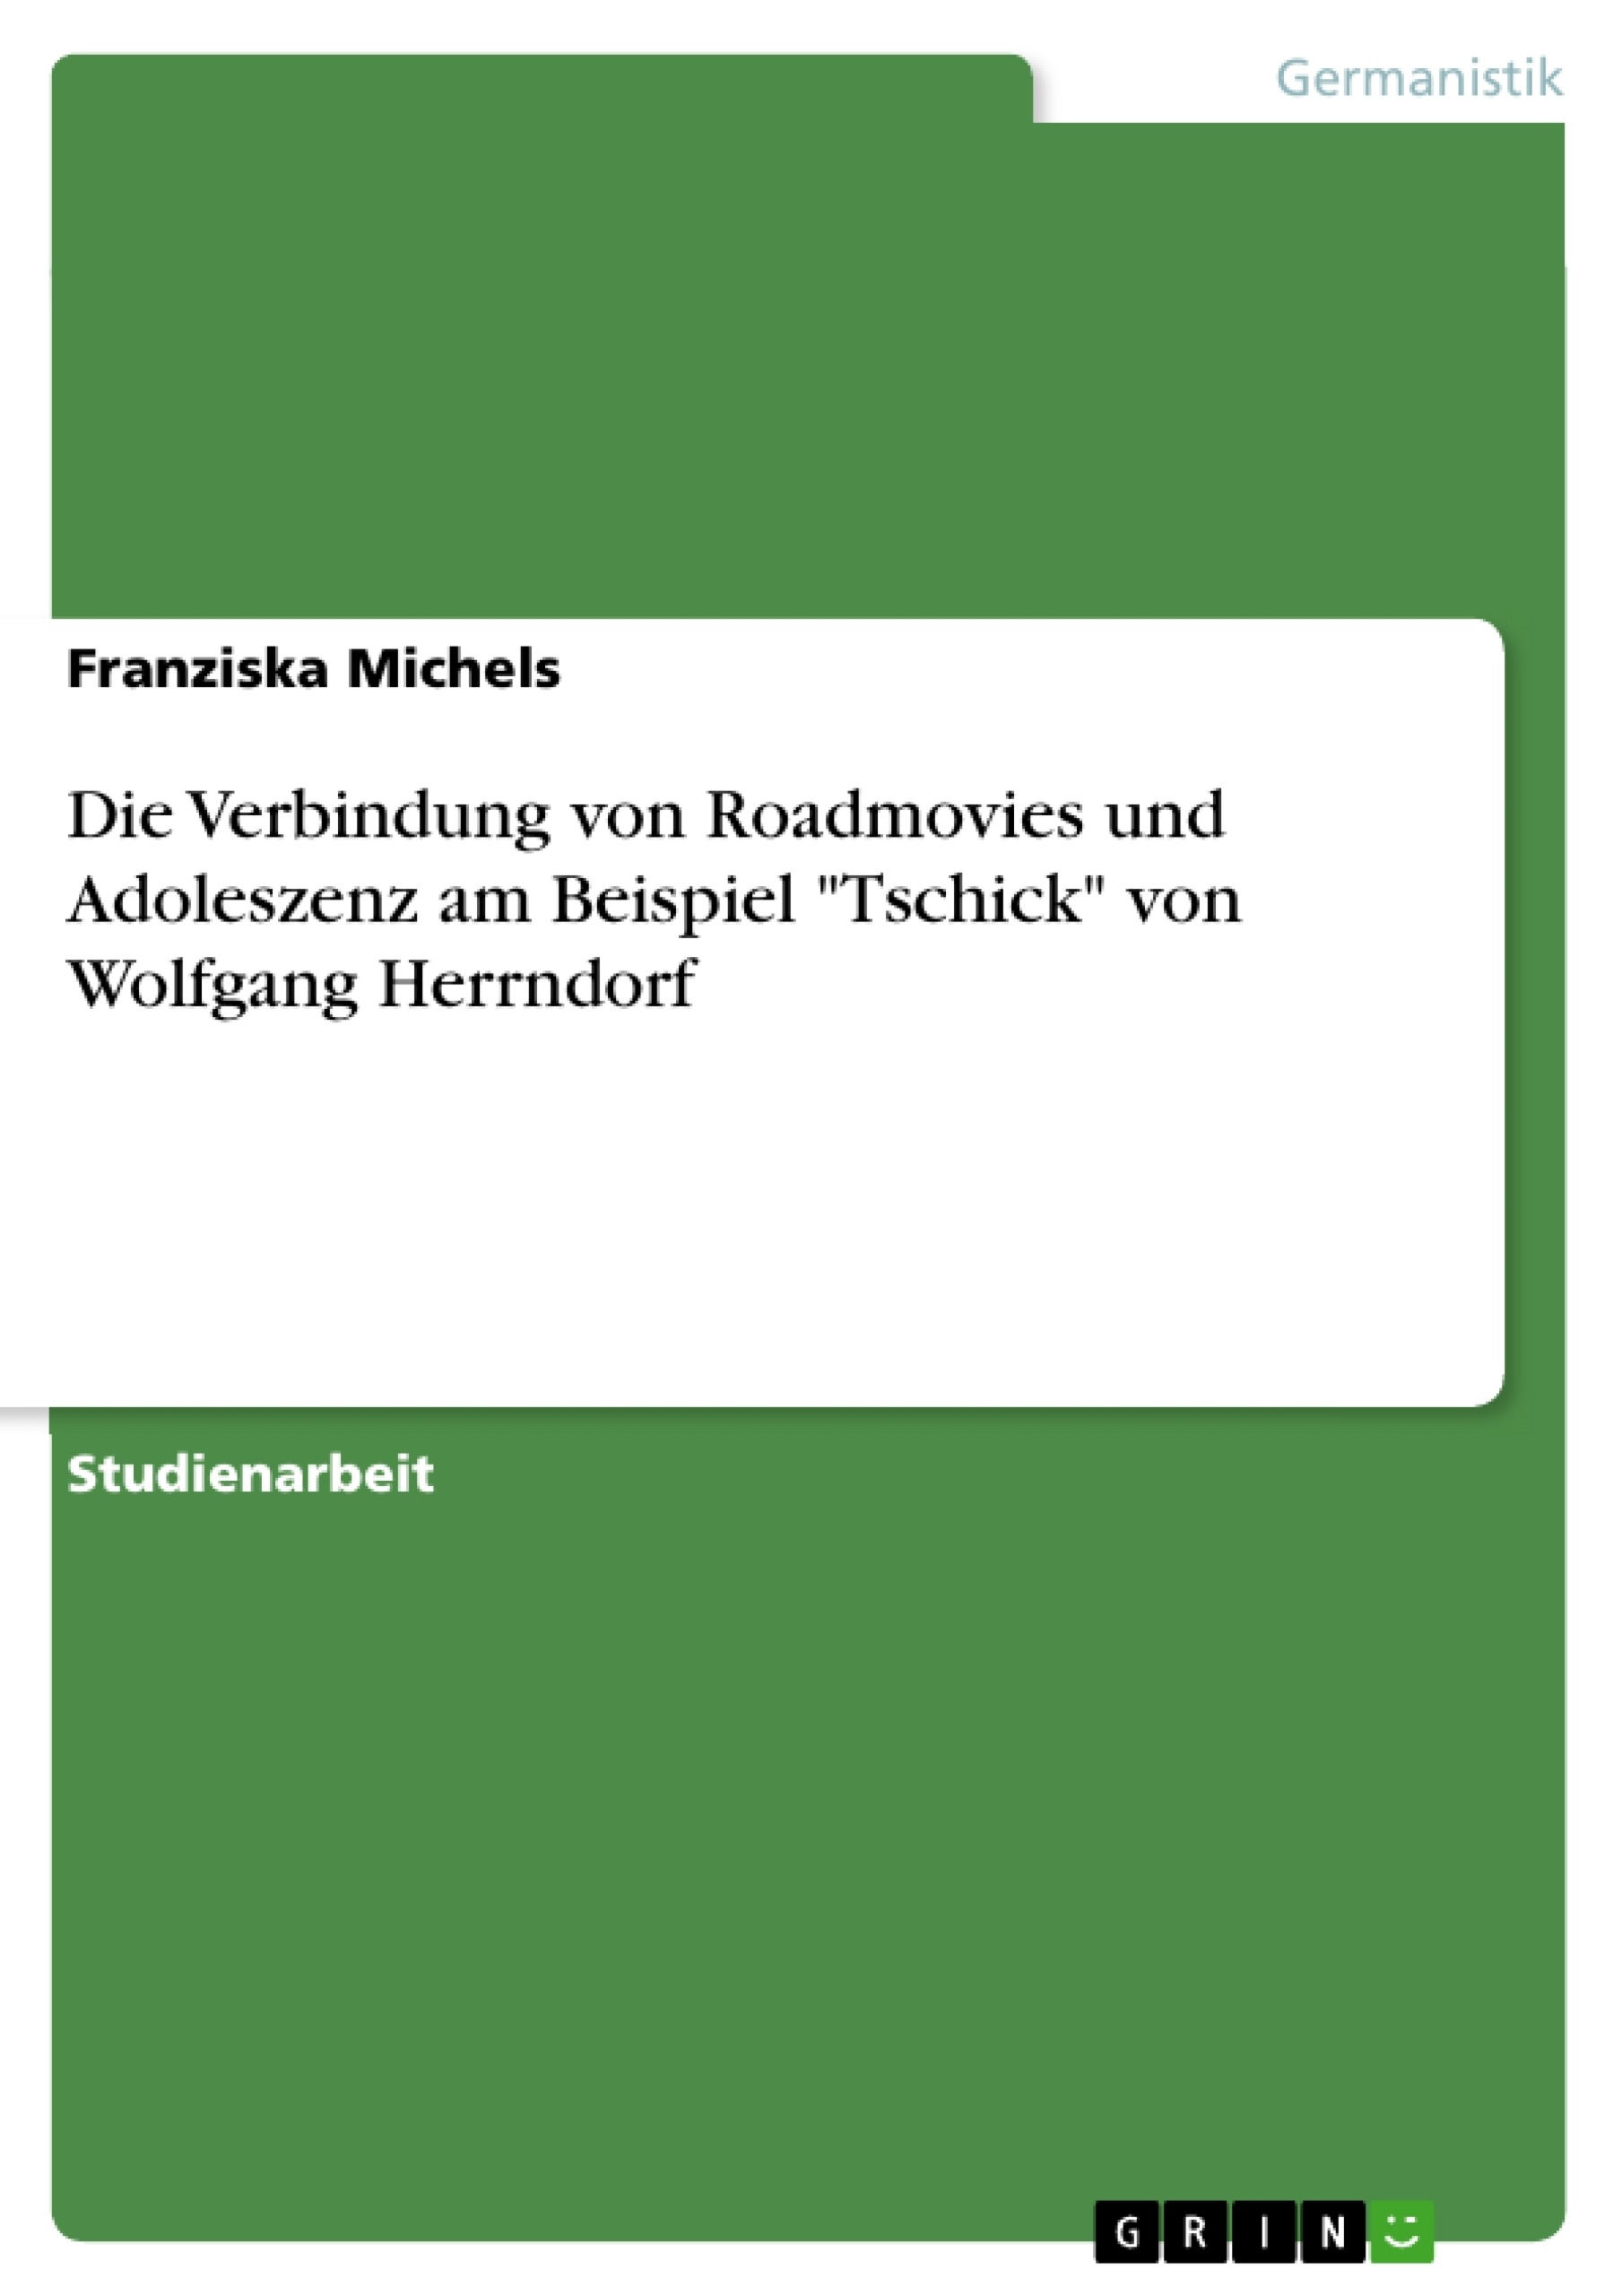 Titre: Die Verbindung von Roadmovies und Adoleszenz am Beispiel "Tschick" von Wolfgang Herrndorf